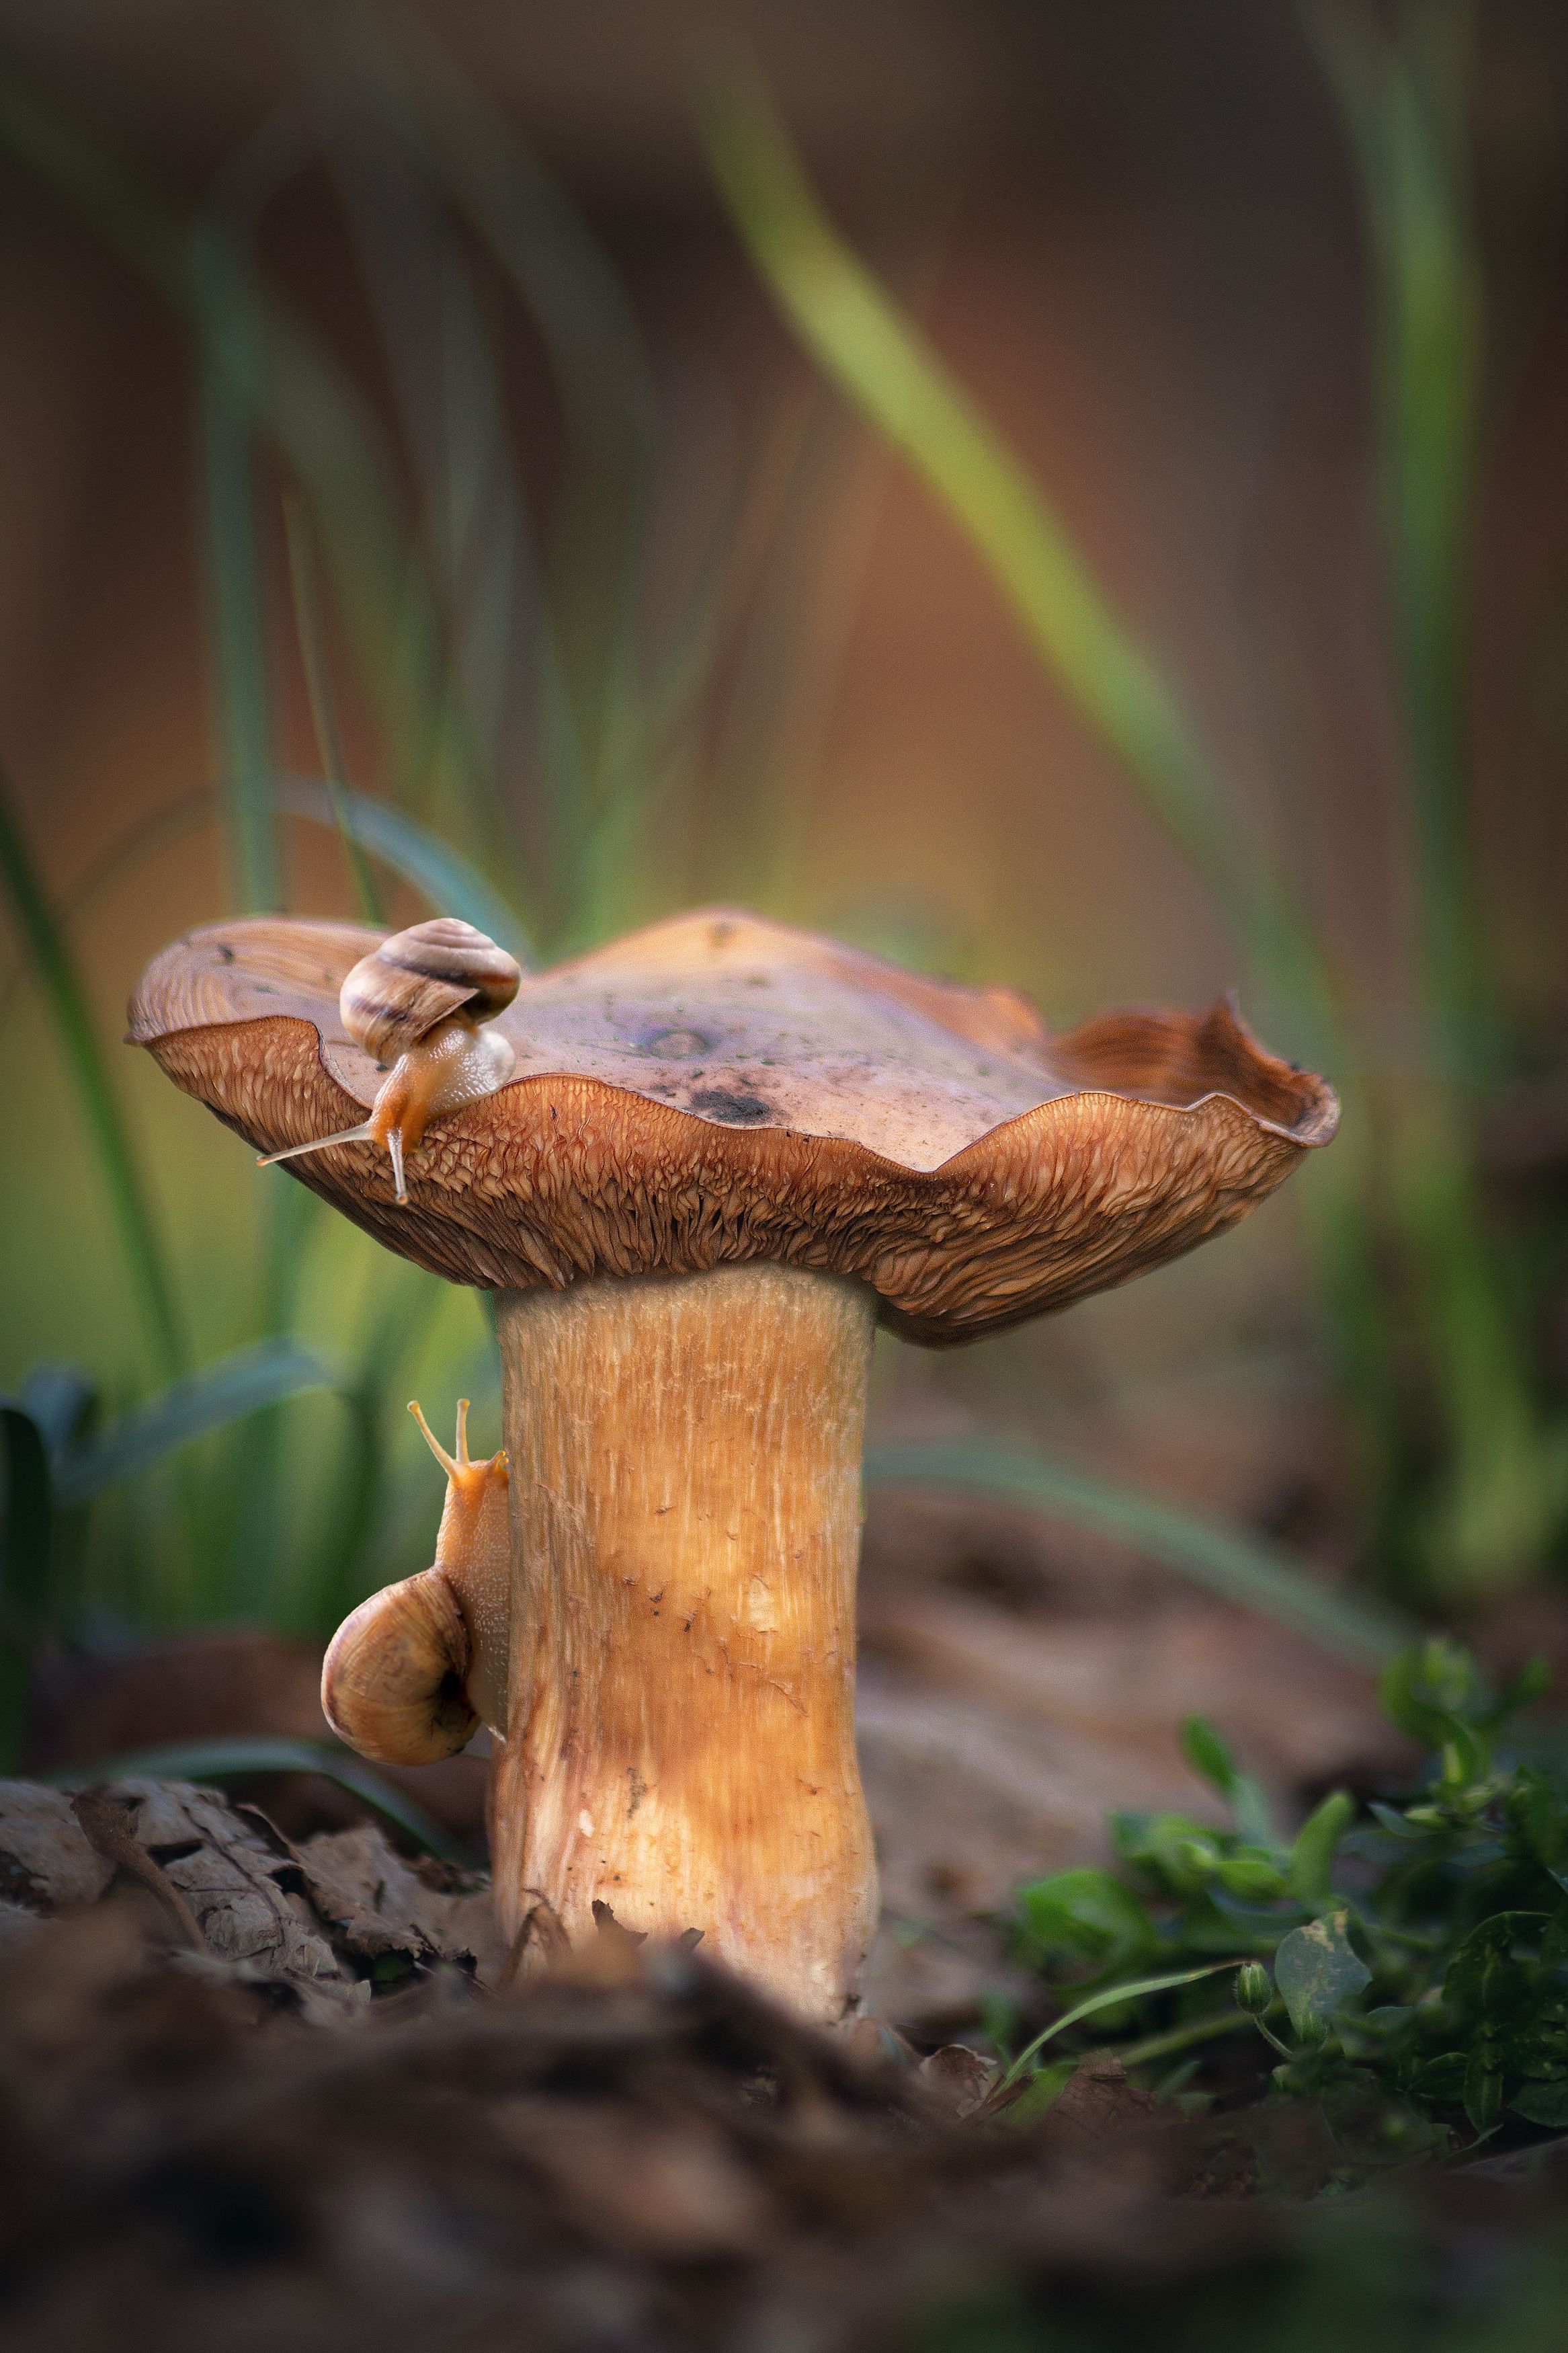 весна апрель гриб улитки природа трава макро фотография, Еремеев Дмитрий